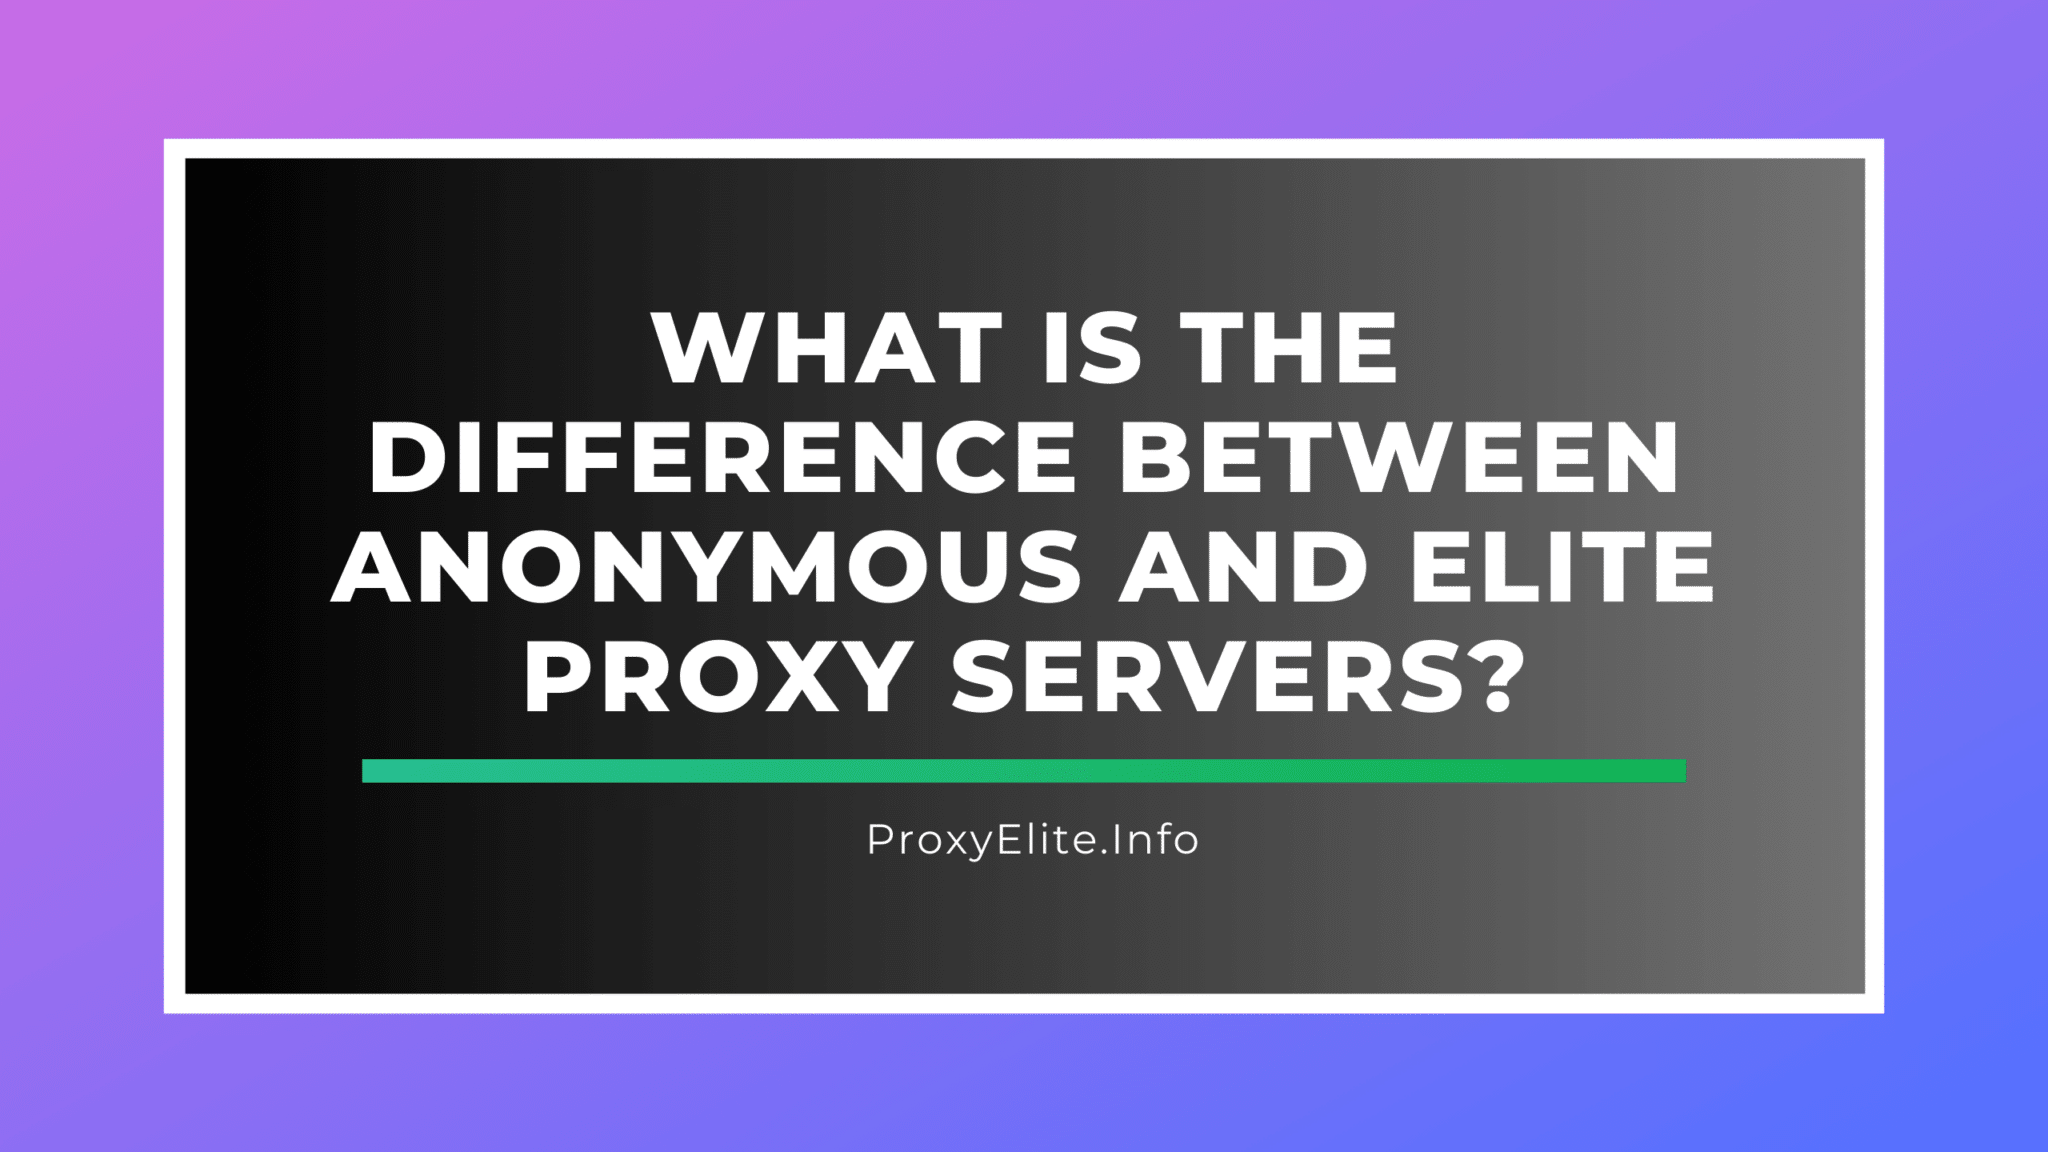 匿名代理服务器和精英代理服务器之间有什么区别？